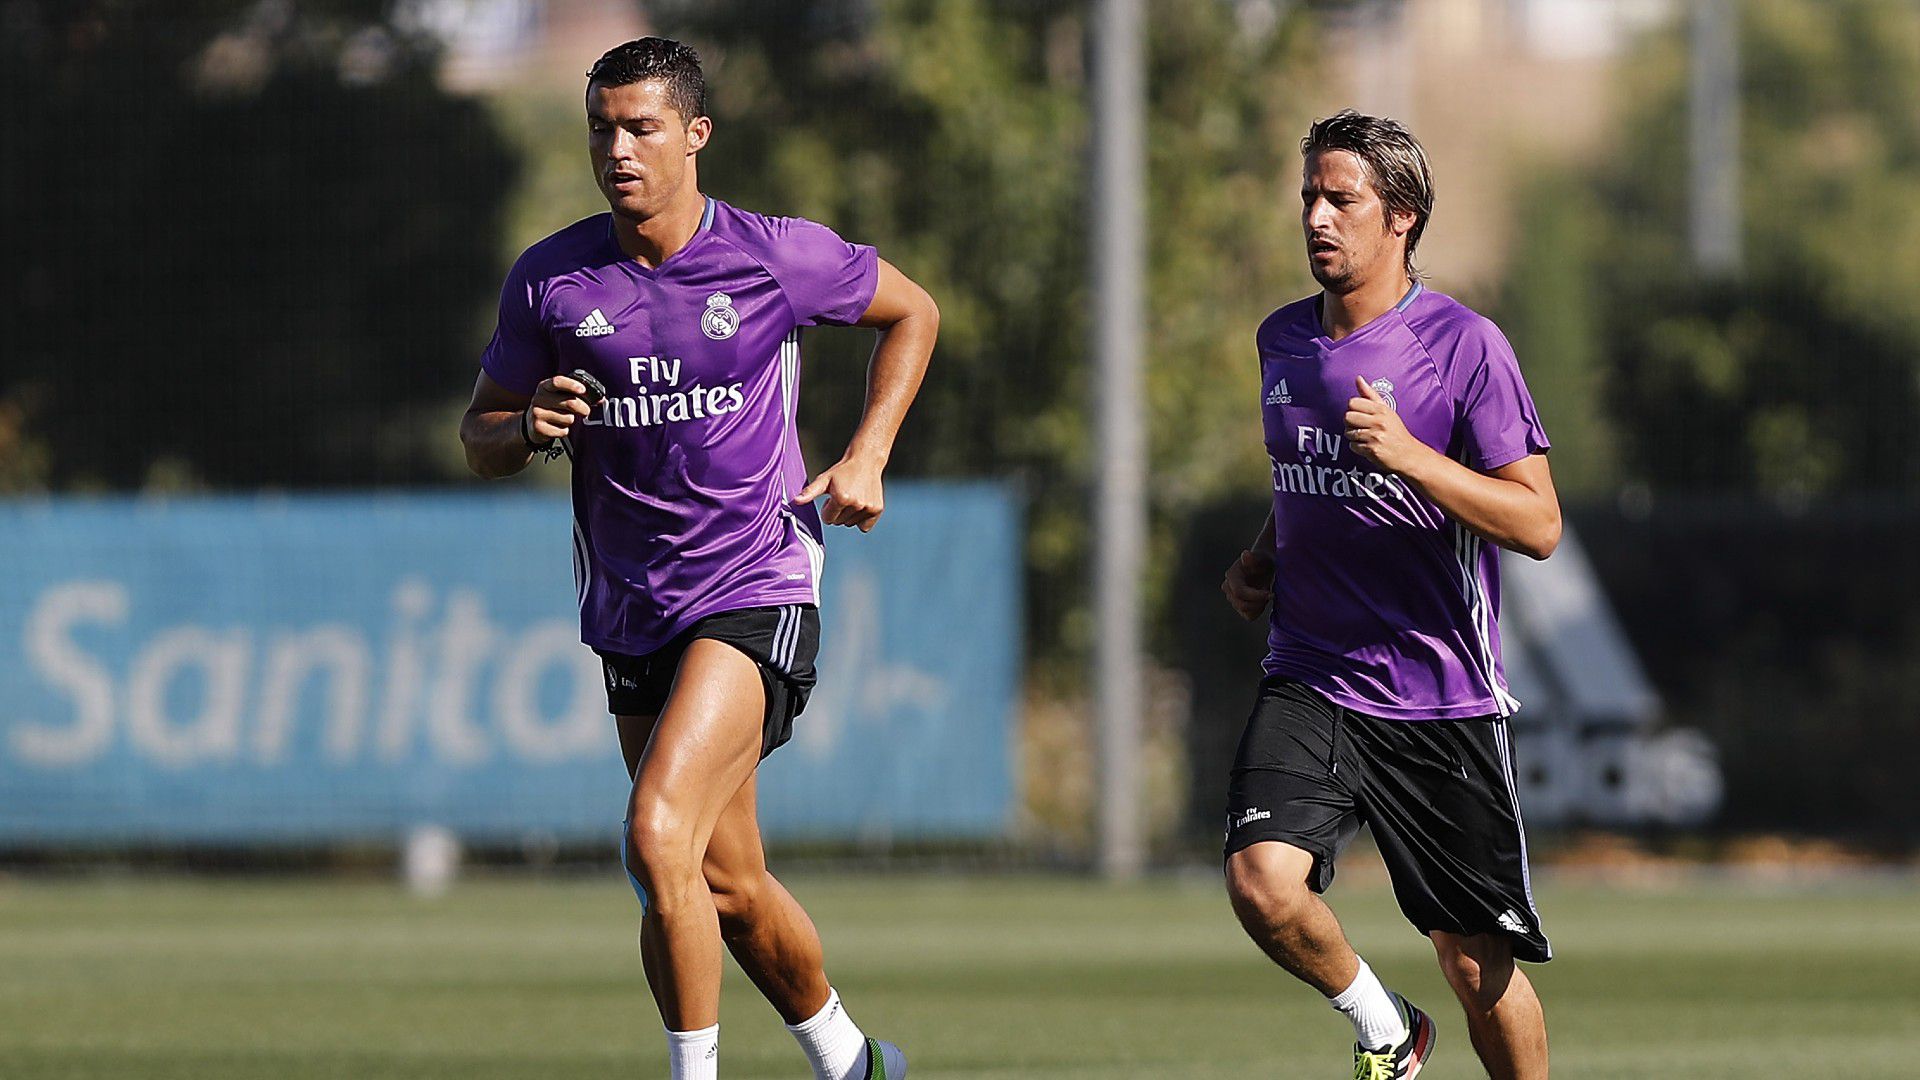 Fábio Coentrao és Cristiano Ronaldo a portugál válogatott mellett a Real Madridban is csapattársak voltak korábban